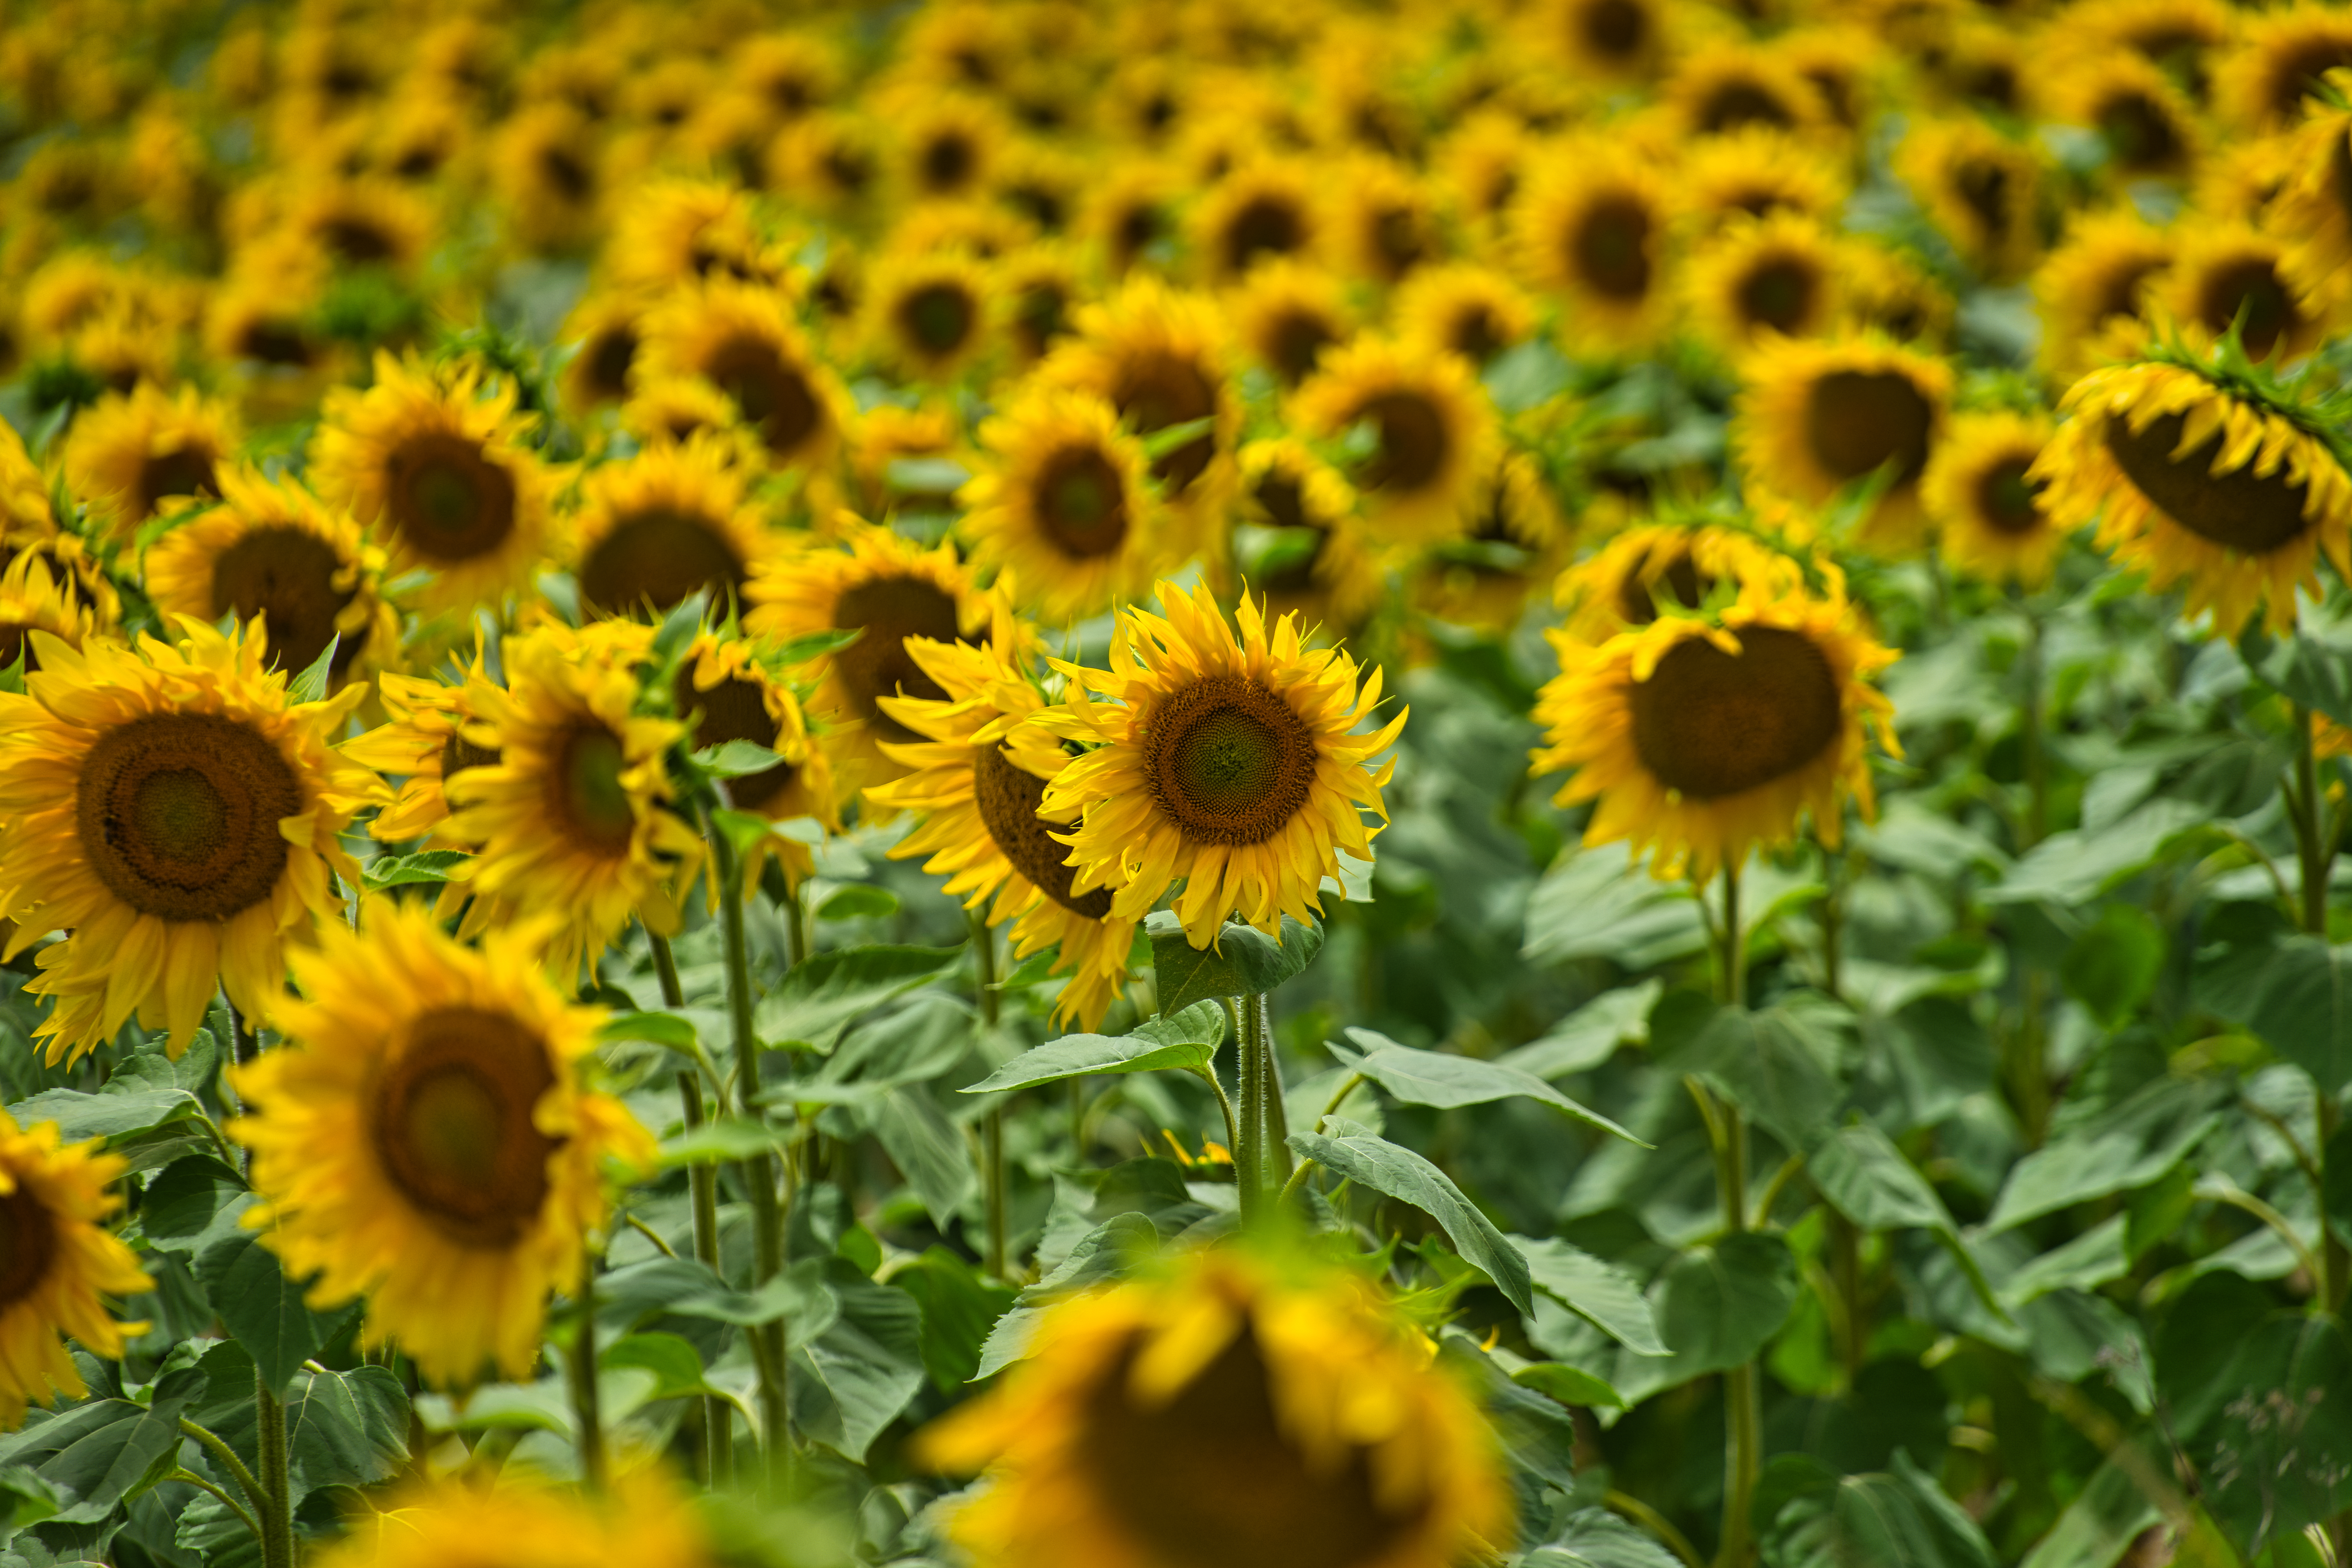 sunflowers-2021-08-29-09-39-21-utc